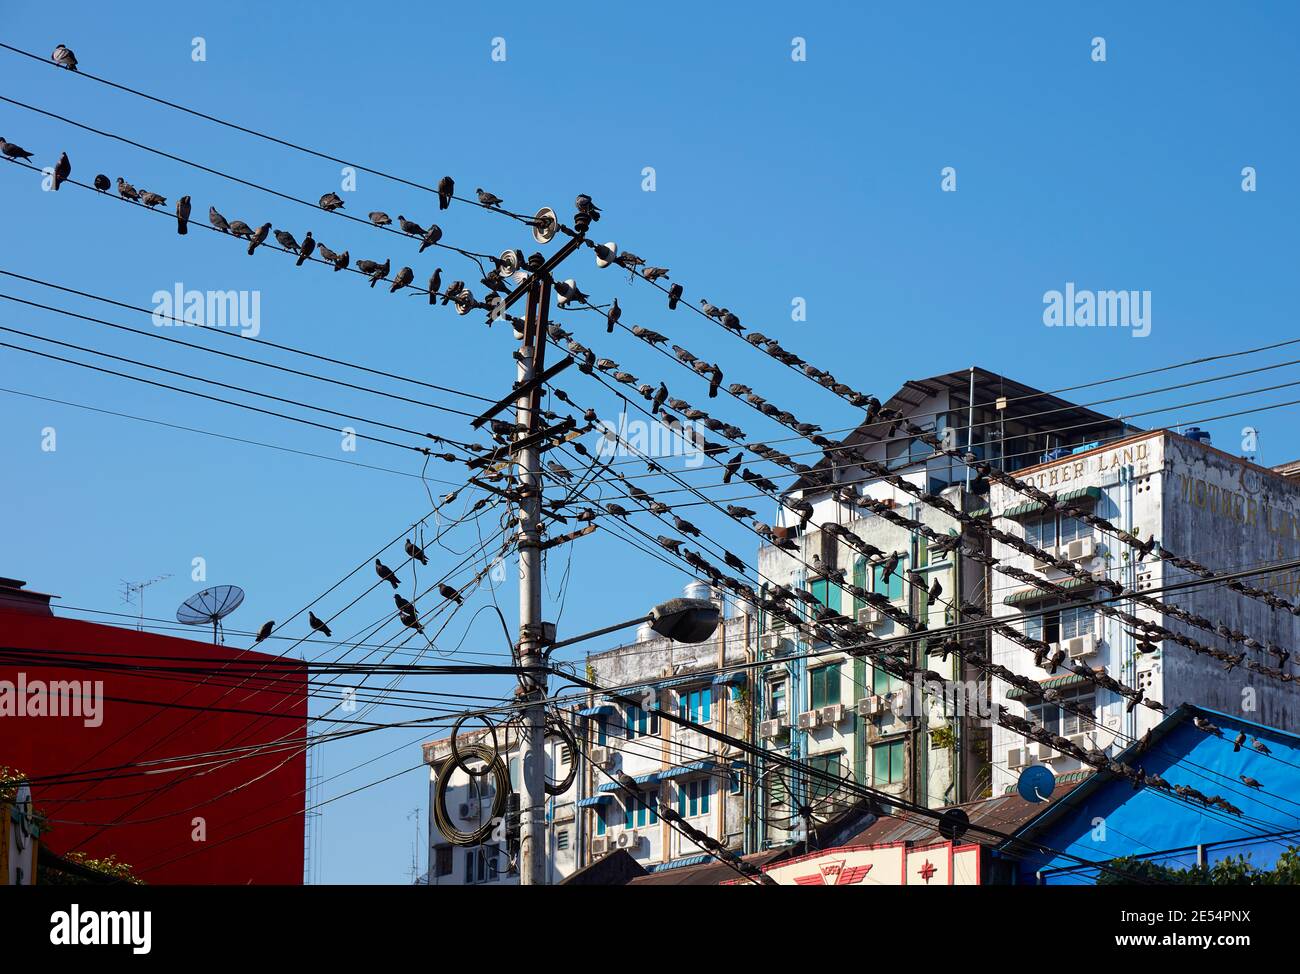 Una comunità di uccelli si è schierata sulle linee elettriche durante un incontro di comunicazione sociale a Yangon, Myanmar. Foto Stock